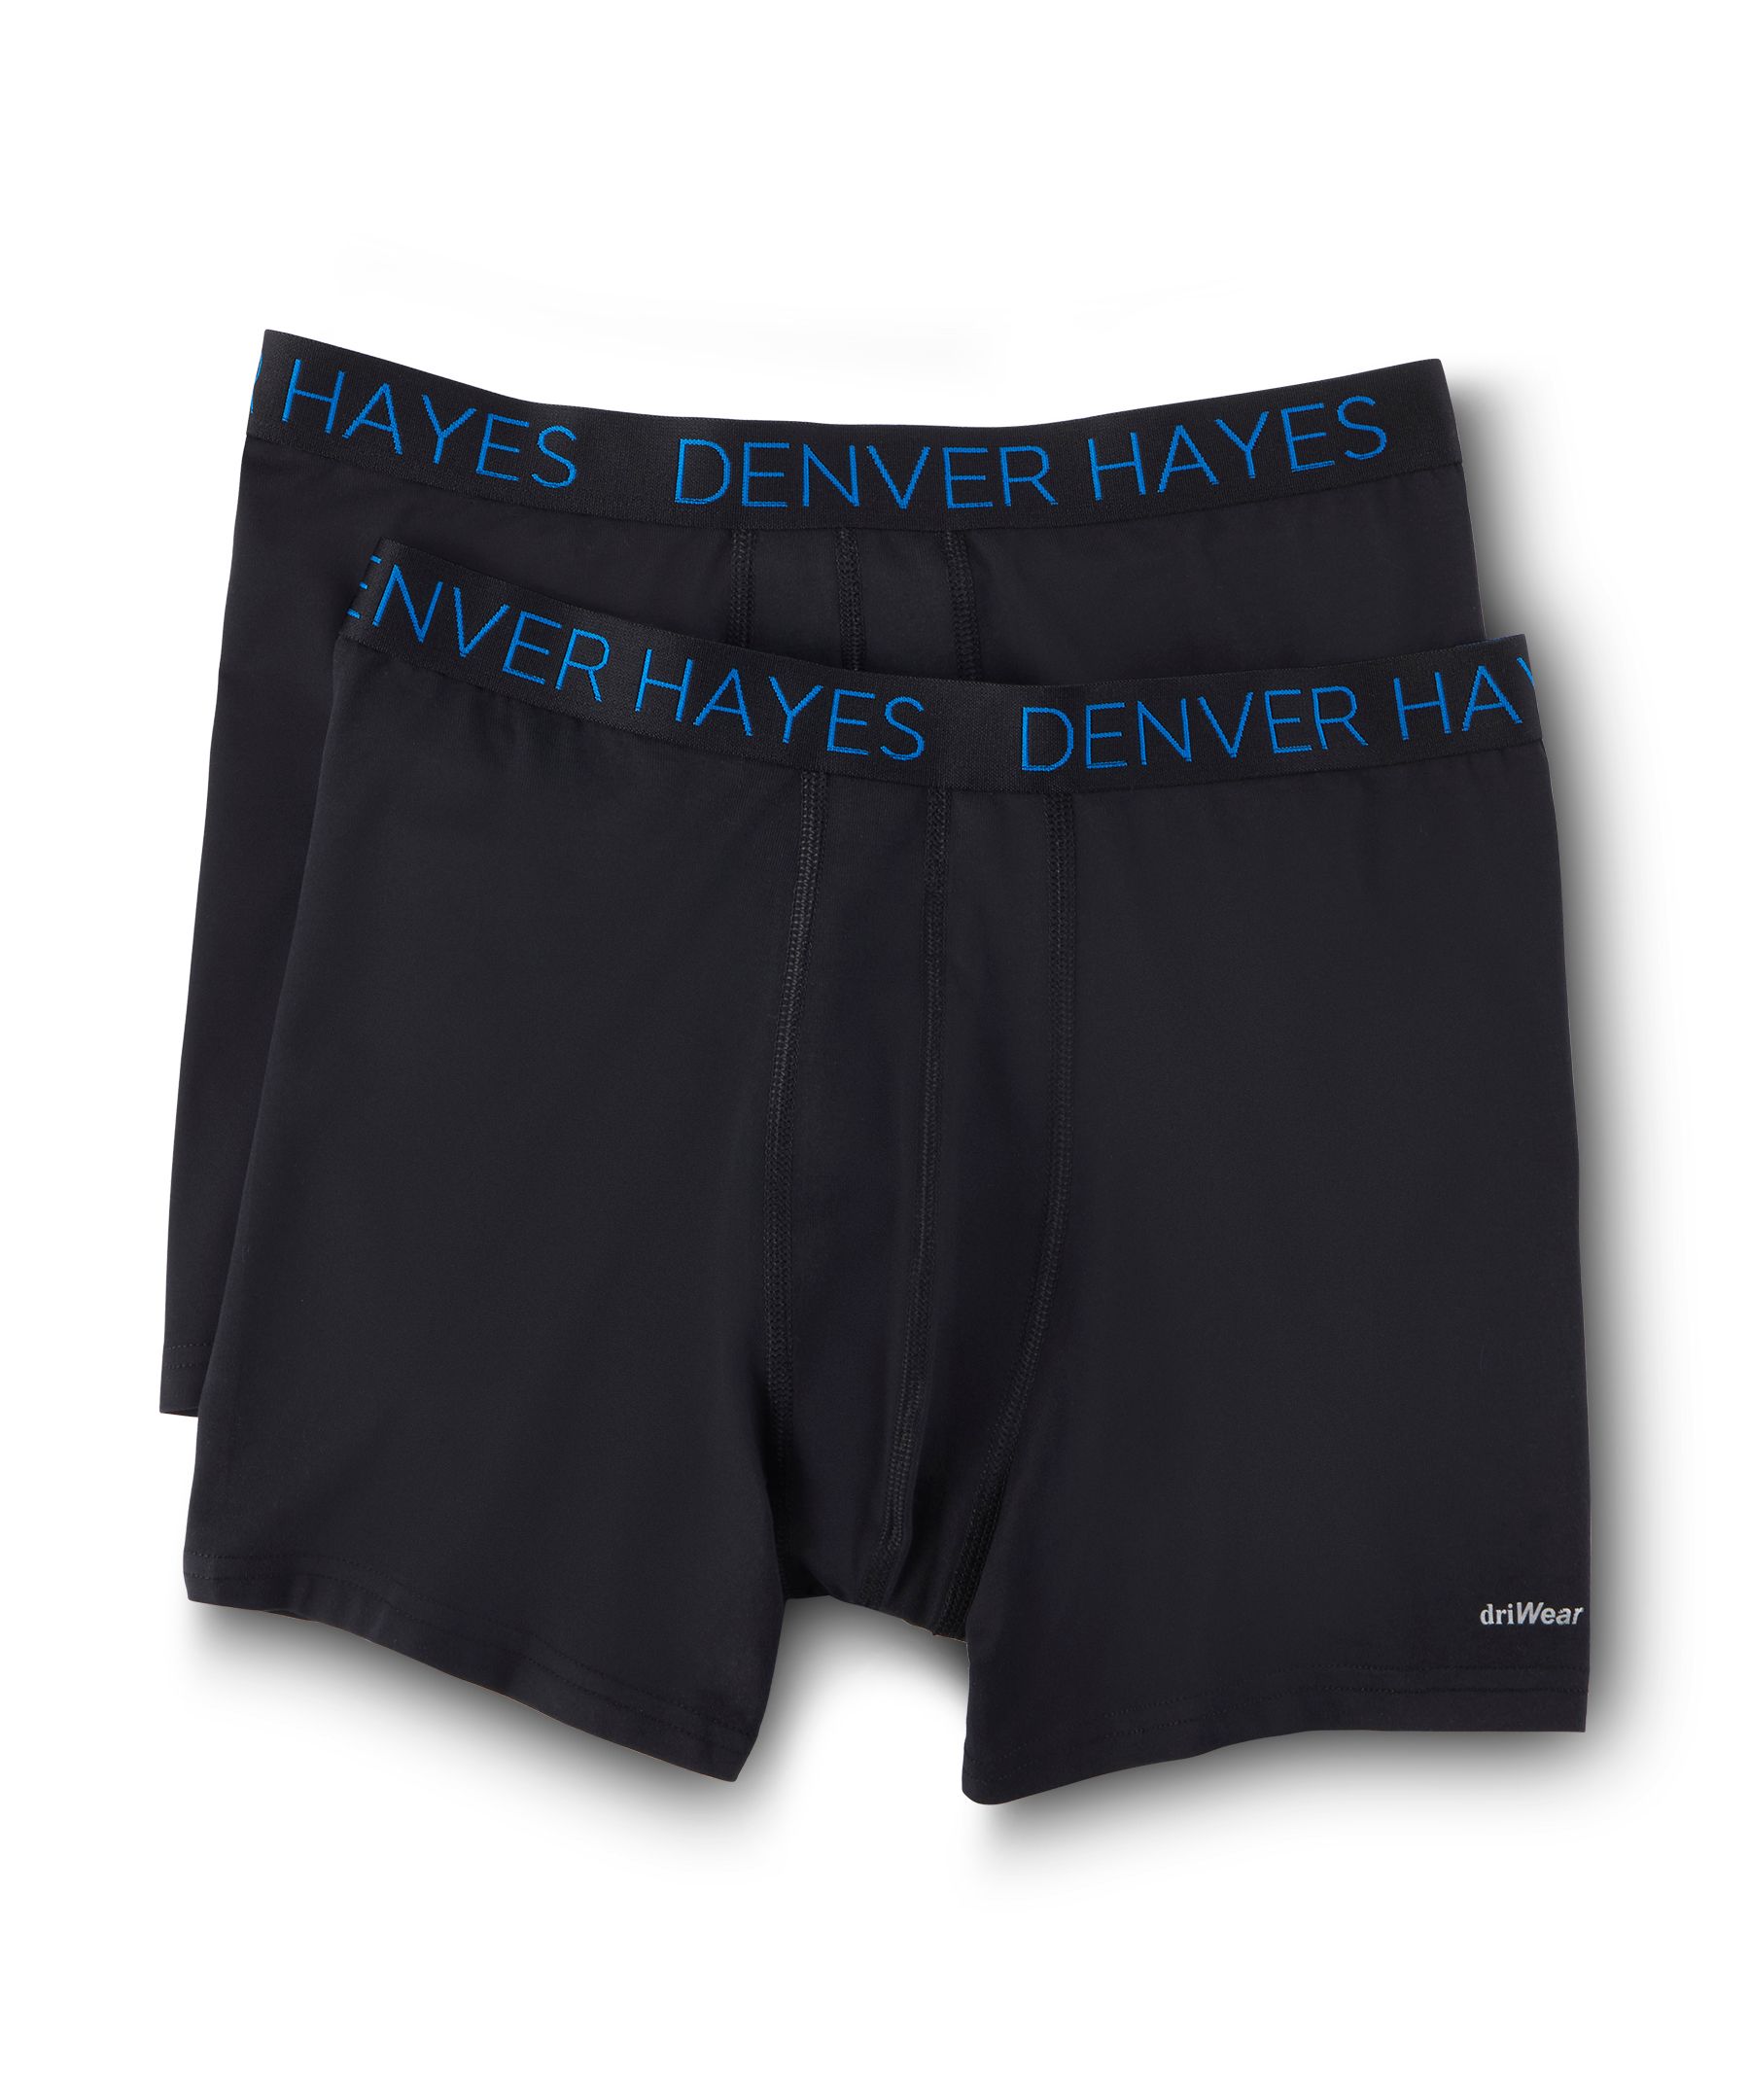 Denver Hayes Men's 2-Pack DriWear Boxer Briefs